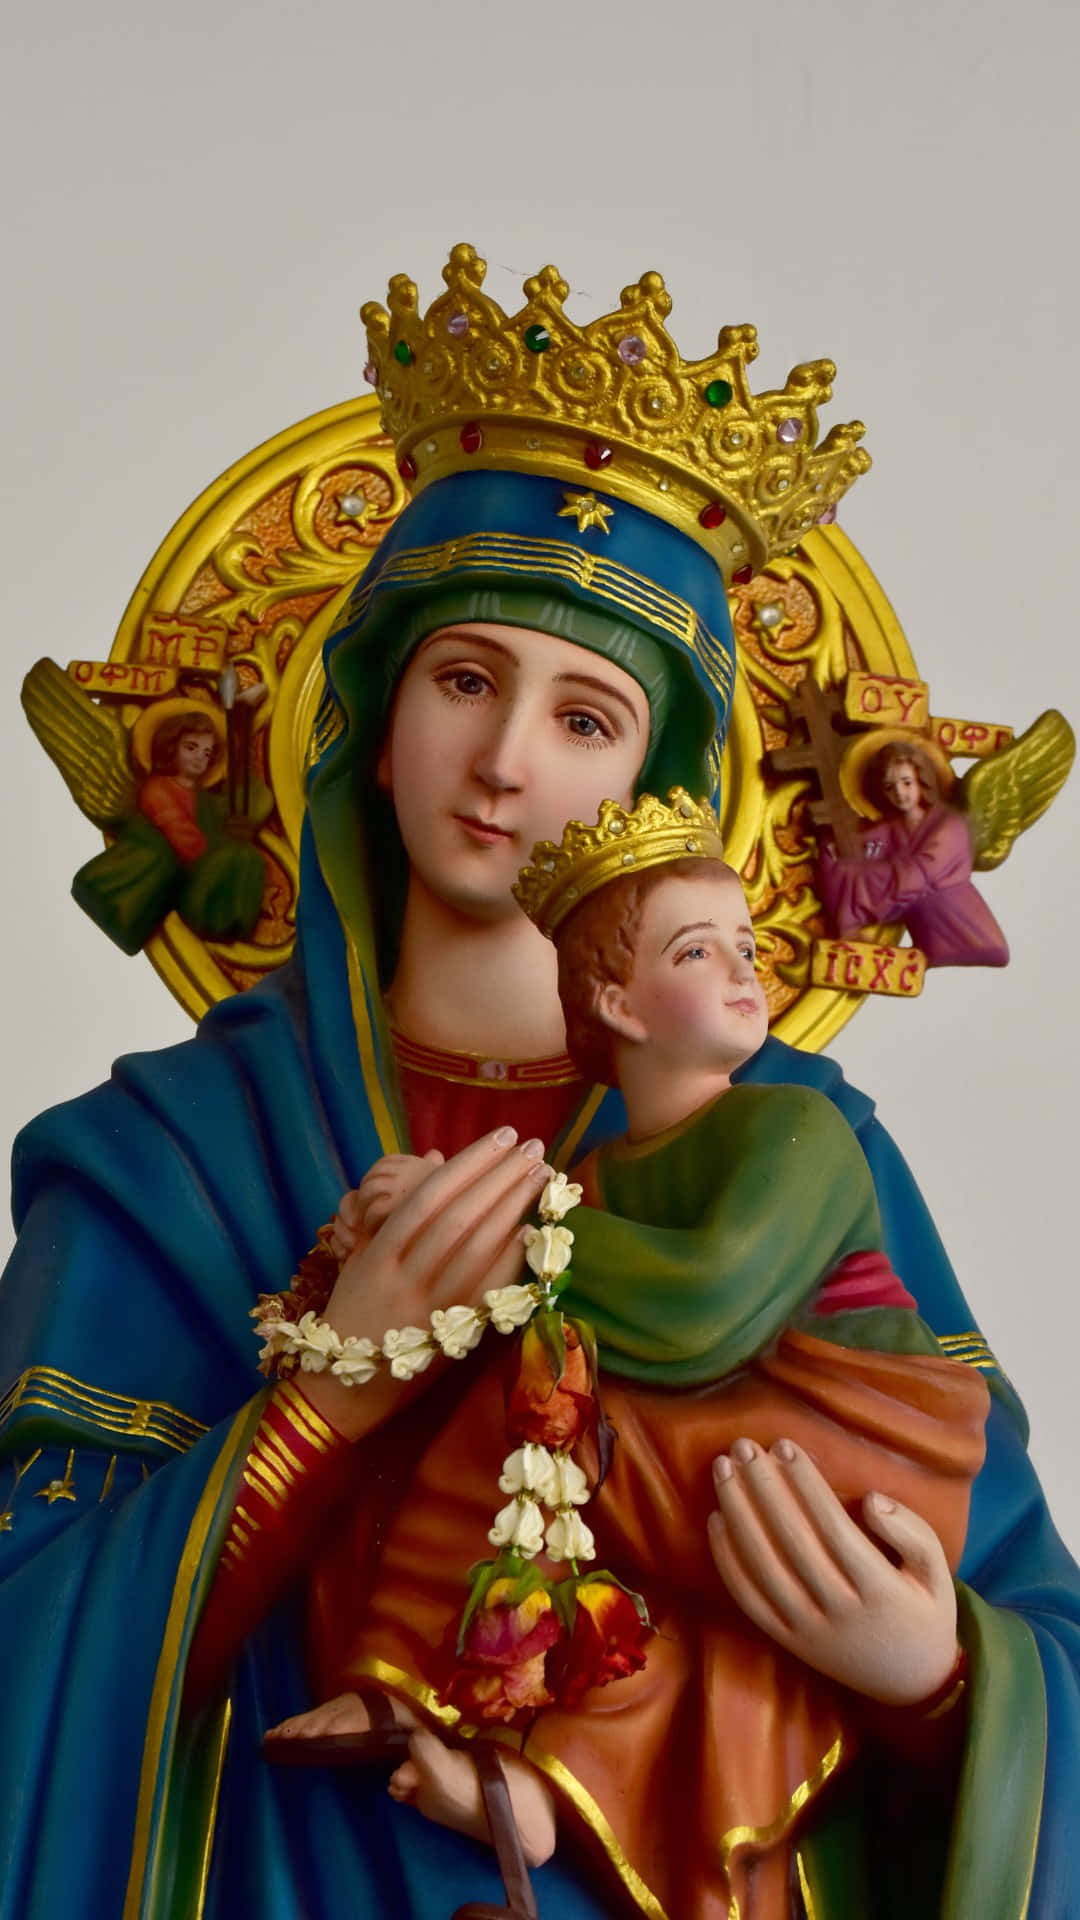 Madonnaand Child Statue Wallpaper